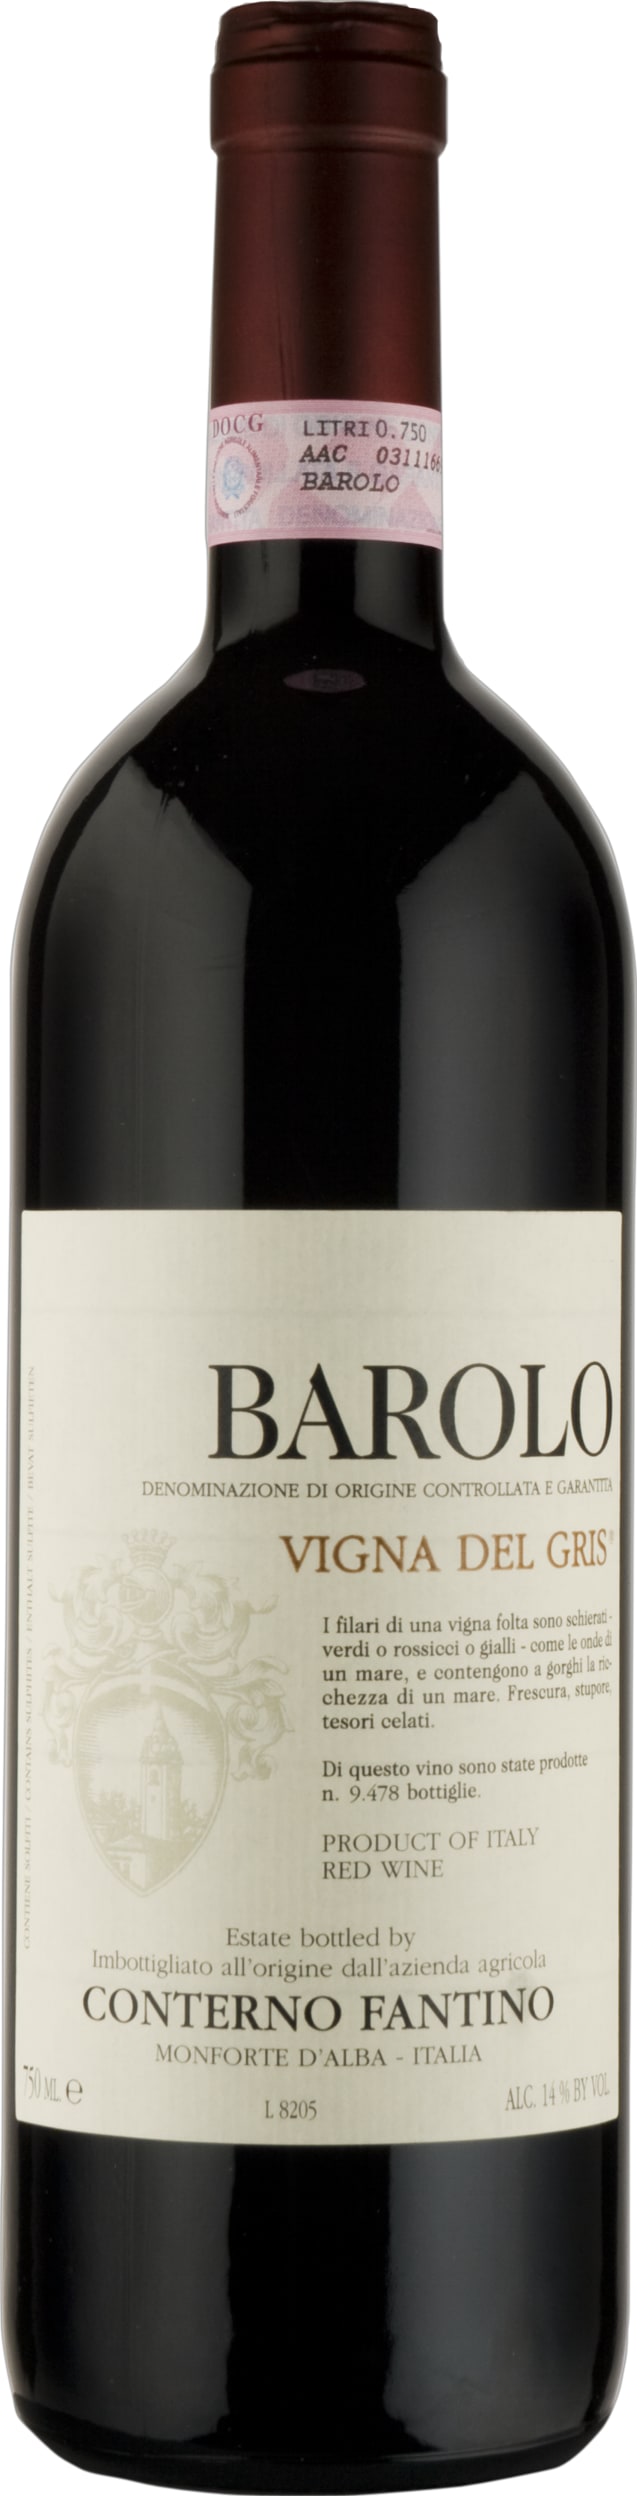 Conterno Fantino Barolo Vigna del Gris 2018 75cl - Buy Conterno Fantino Wines from GREAT WINES DIRECT wine shop